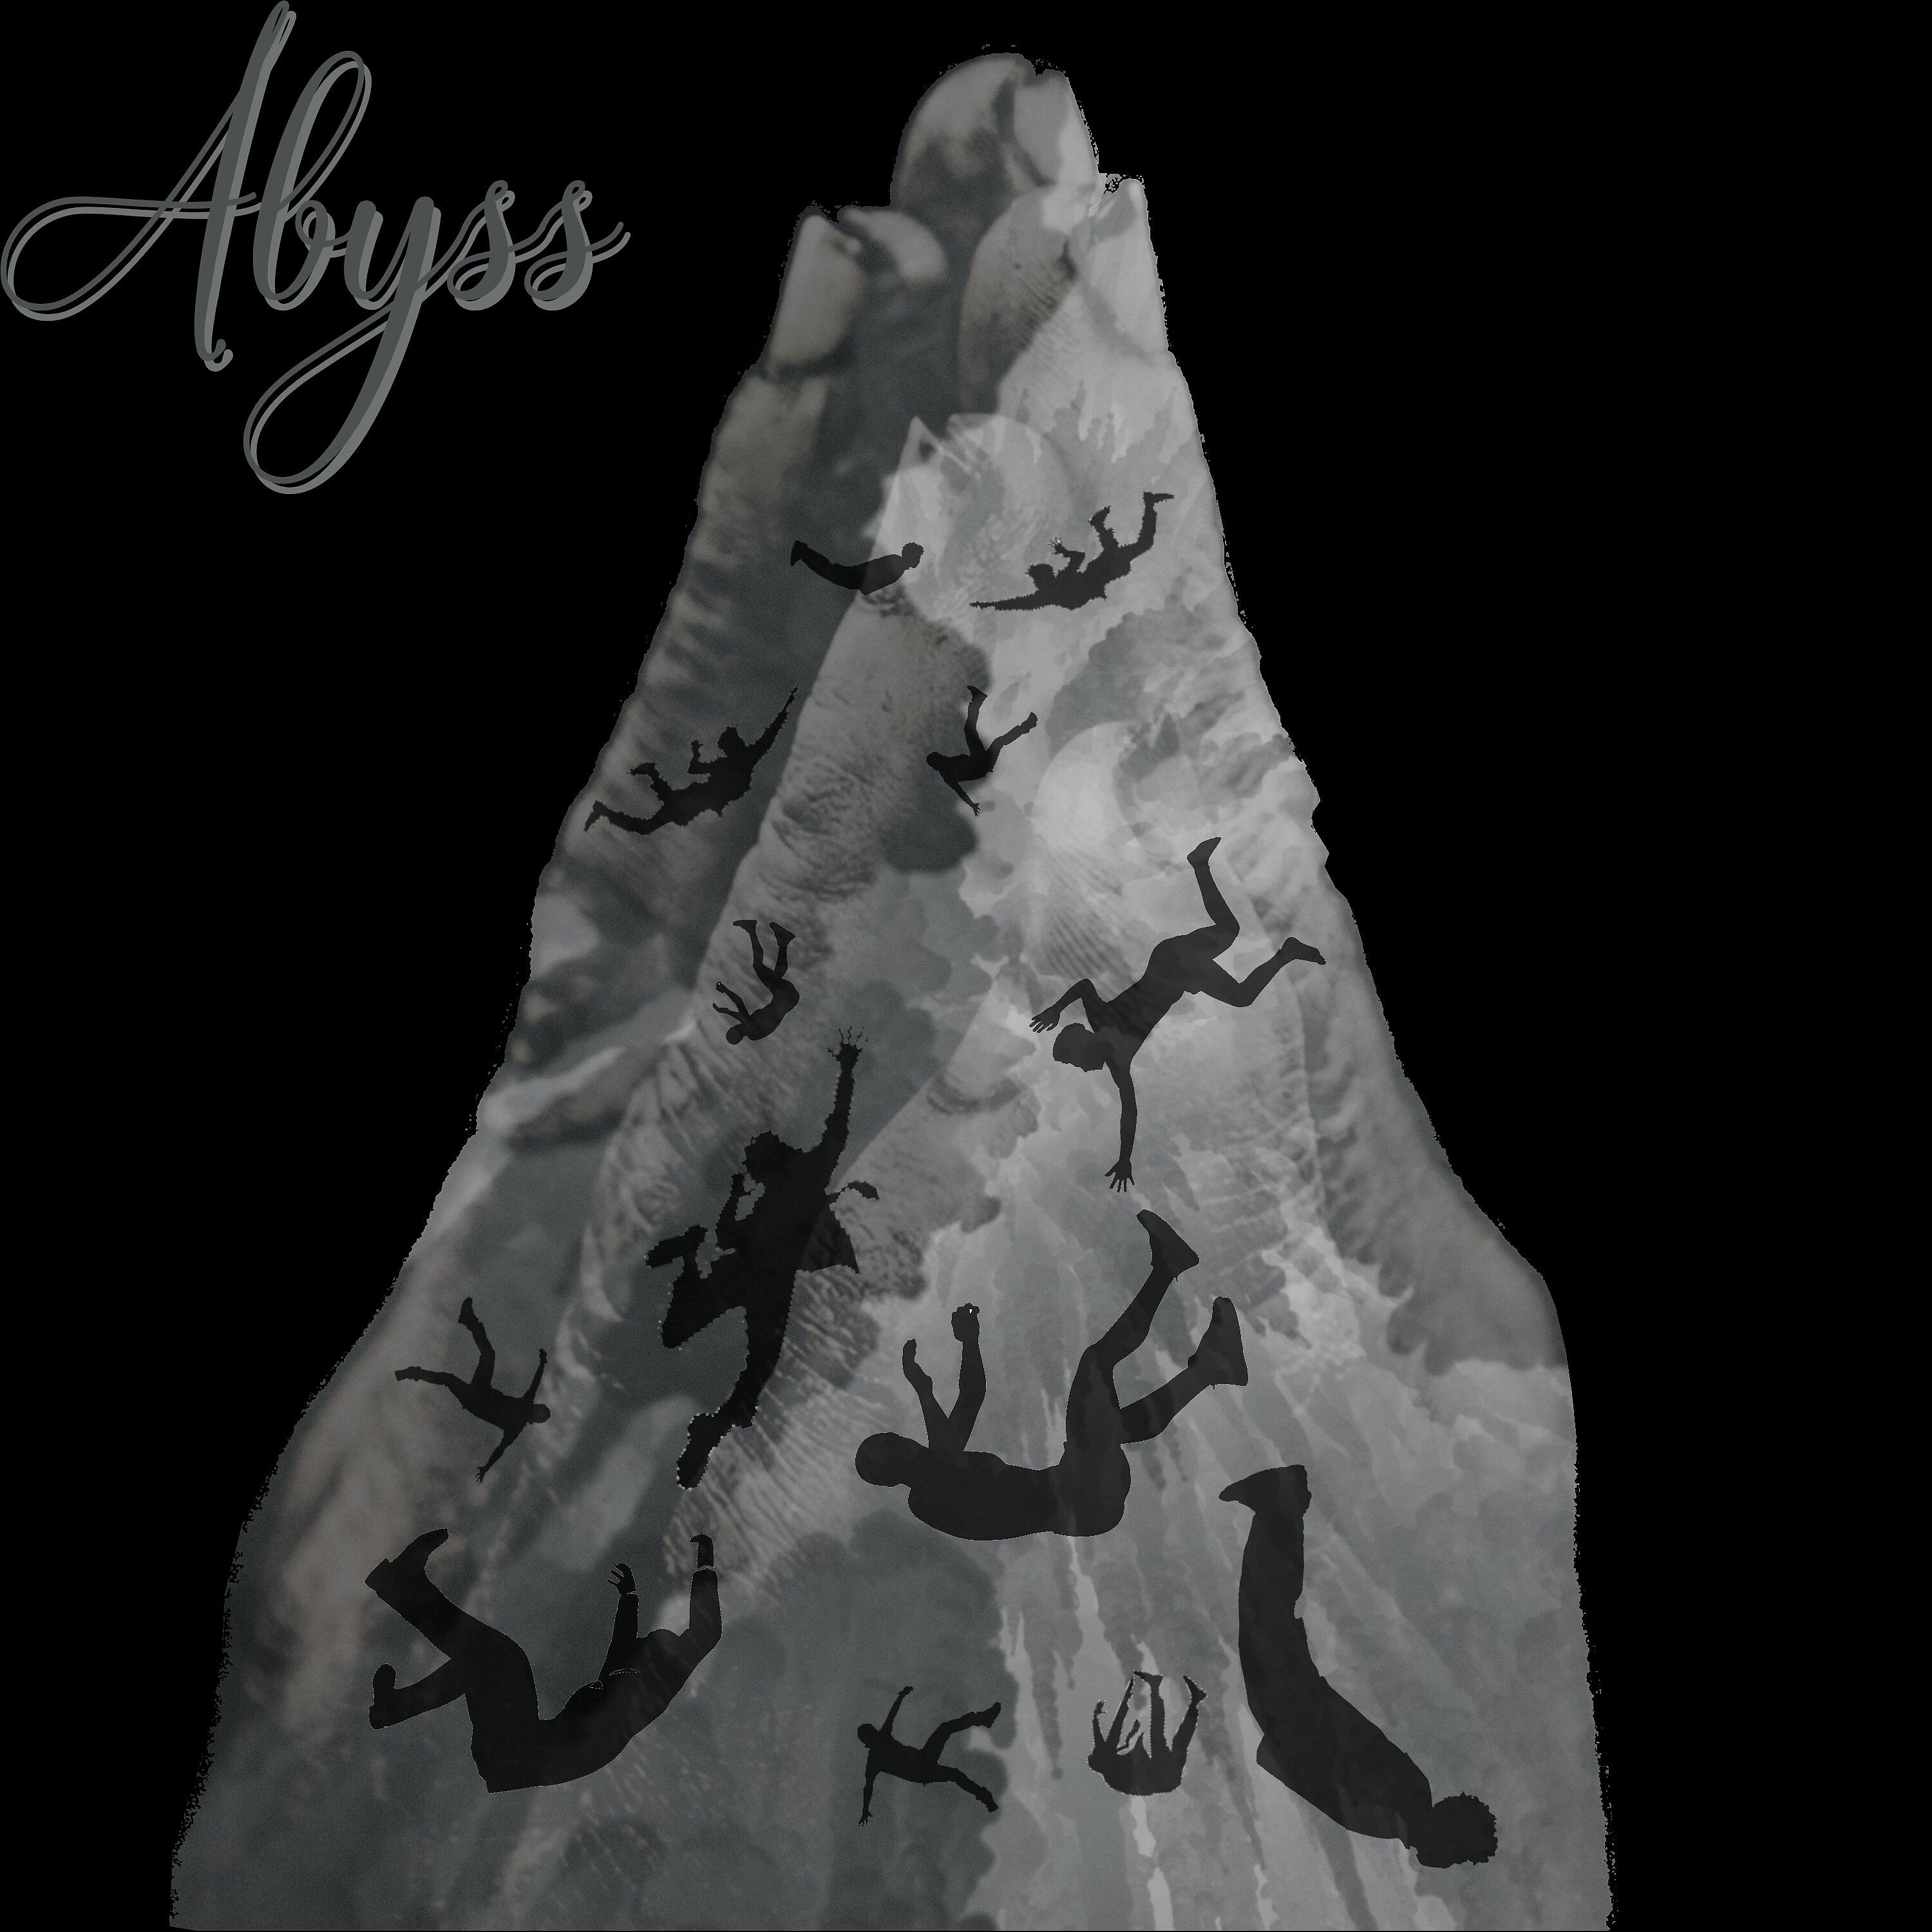 Постер альбома Abyss